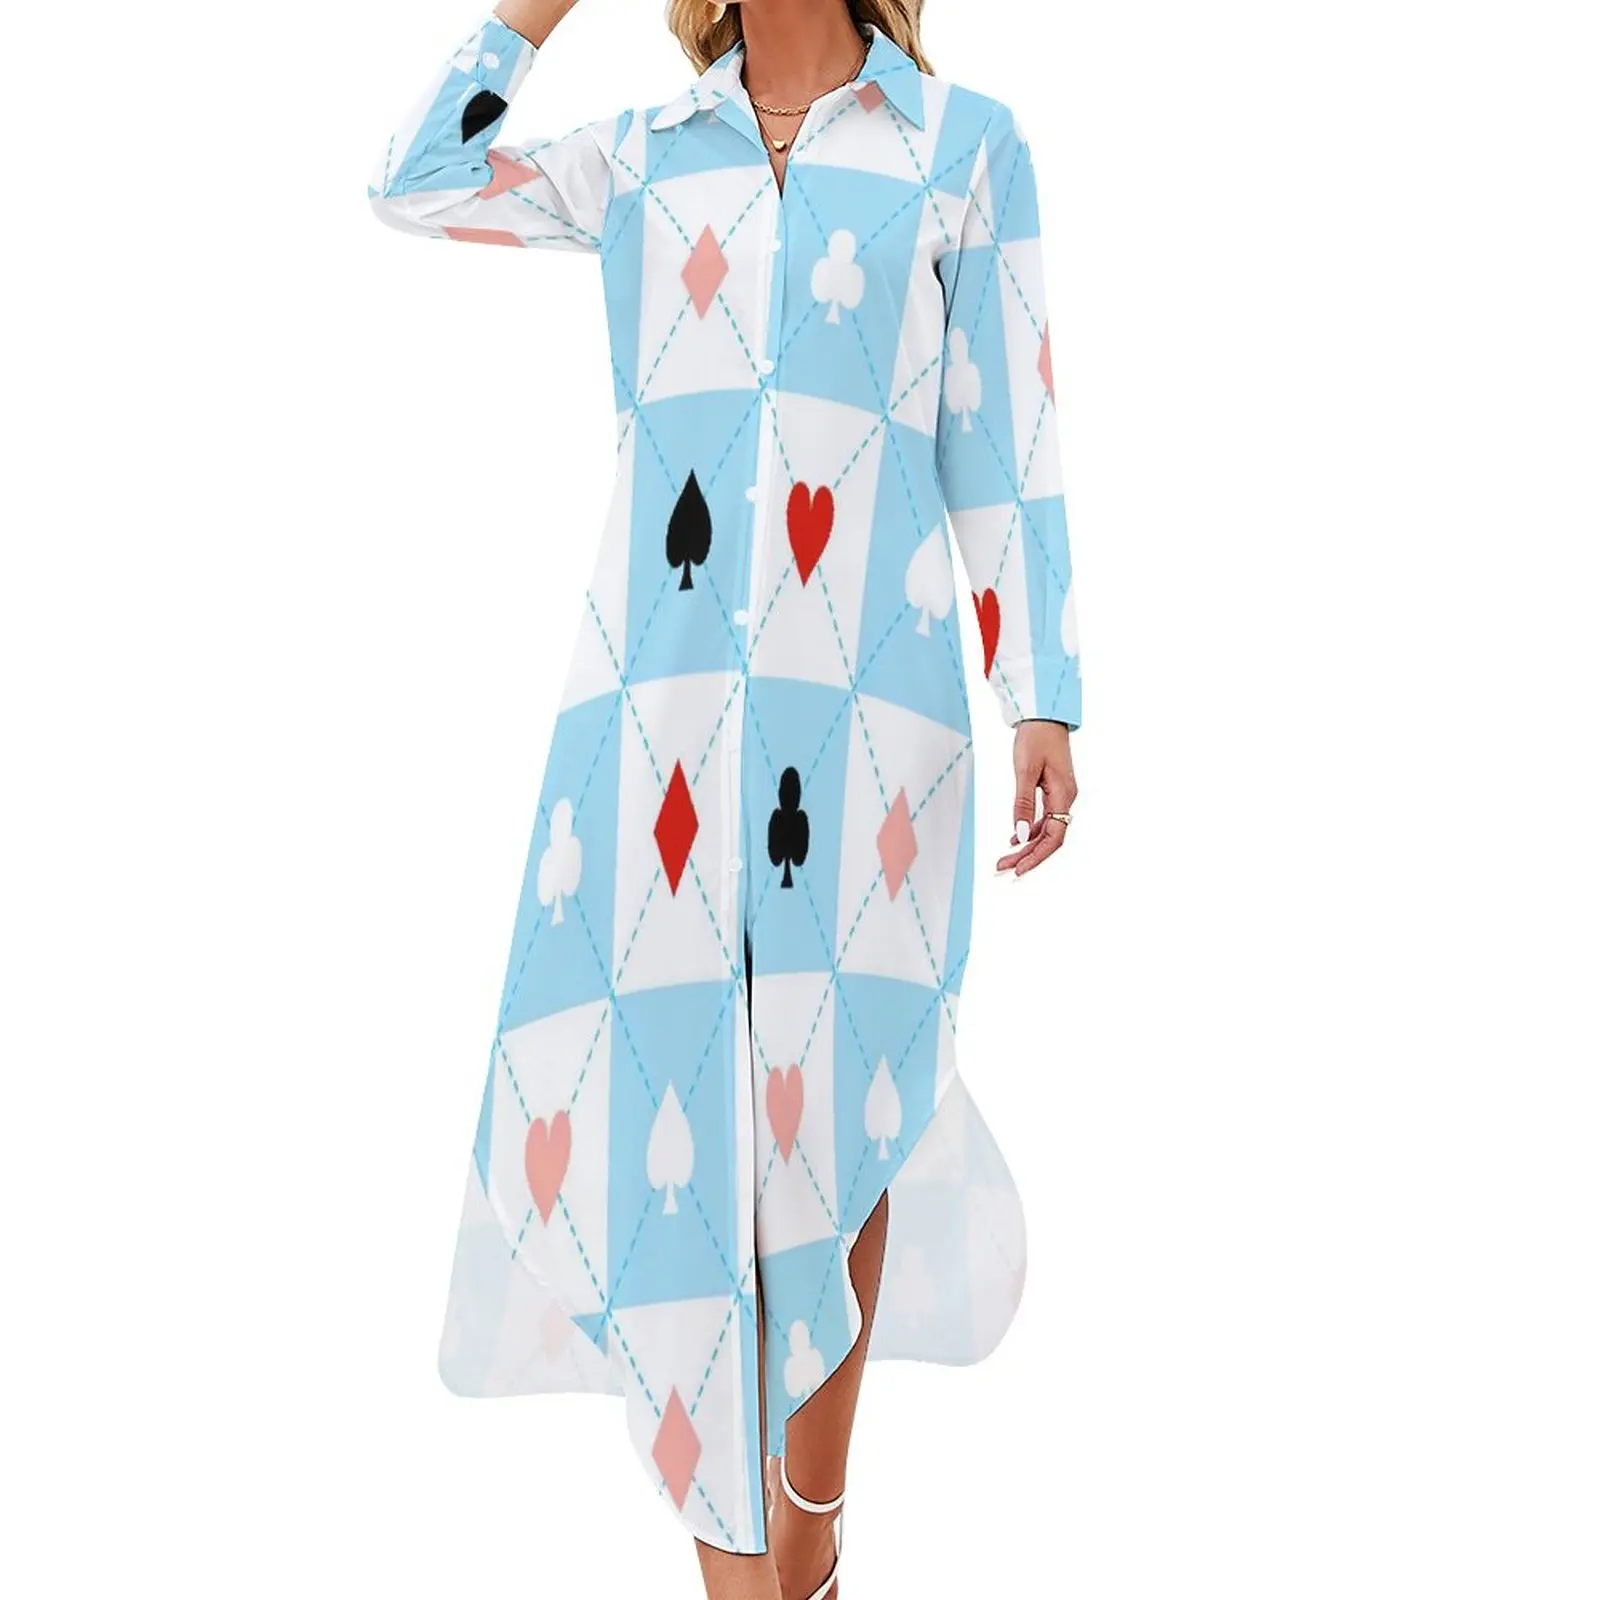 

Шифоновое платье в синюю и белую клетку с принтом сердца и покера, модное корейское Повседневное платье, женская сексуальная Дизайнерская одежда, 3XL, 4XL, 5XL